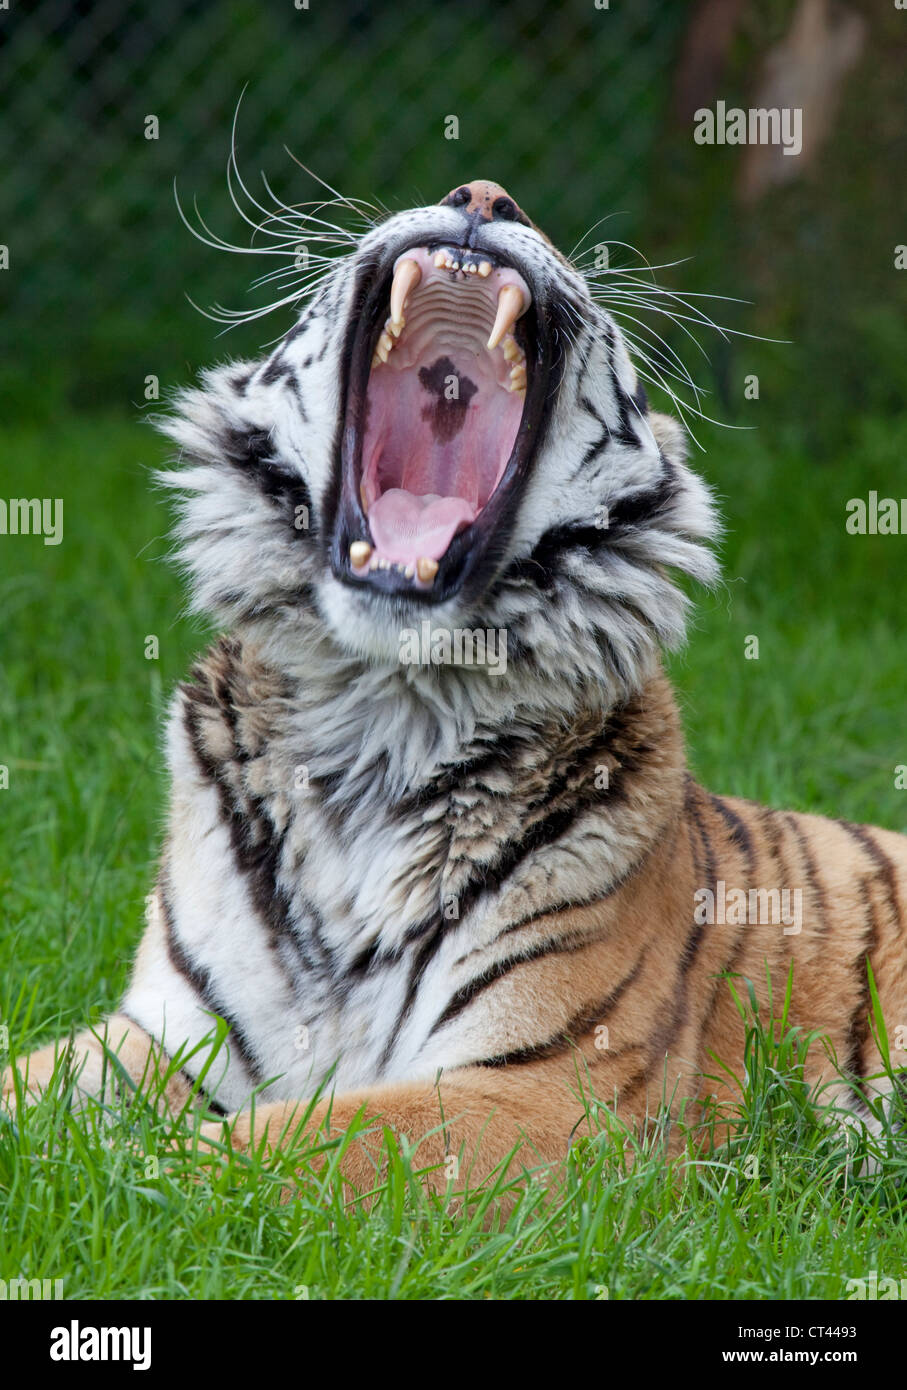 siberian amur tiger Stock Photo